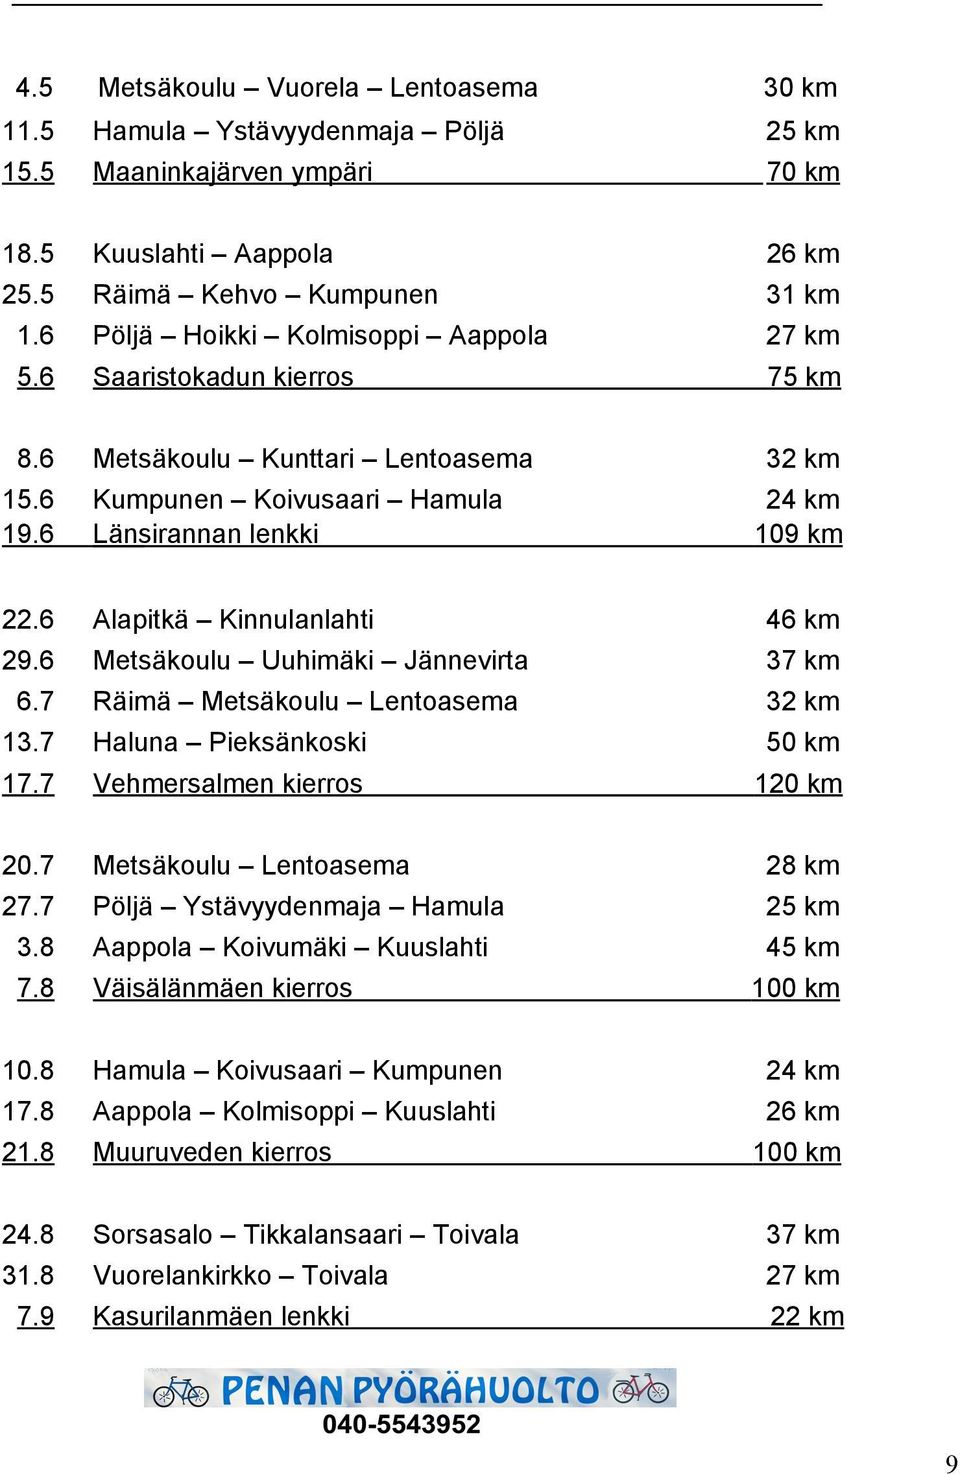 6 Alapitkä Kinnulanlahti 46 km 29.6 Metsäkoulu Uuhimäki Jännevirta 37 km 6.7 Räimä Metsäkoulu Lentoasema 32 km 13.7 Haluna Pieksänkoski 50 km 17.7 Vehmersalmen kierros 120 km 20.